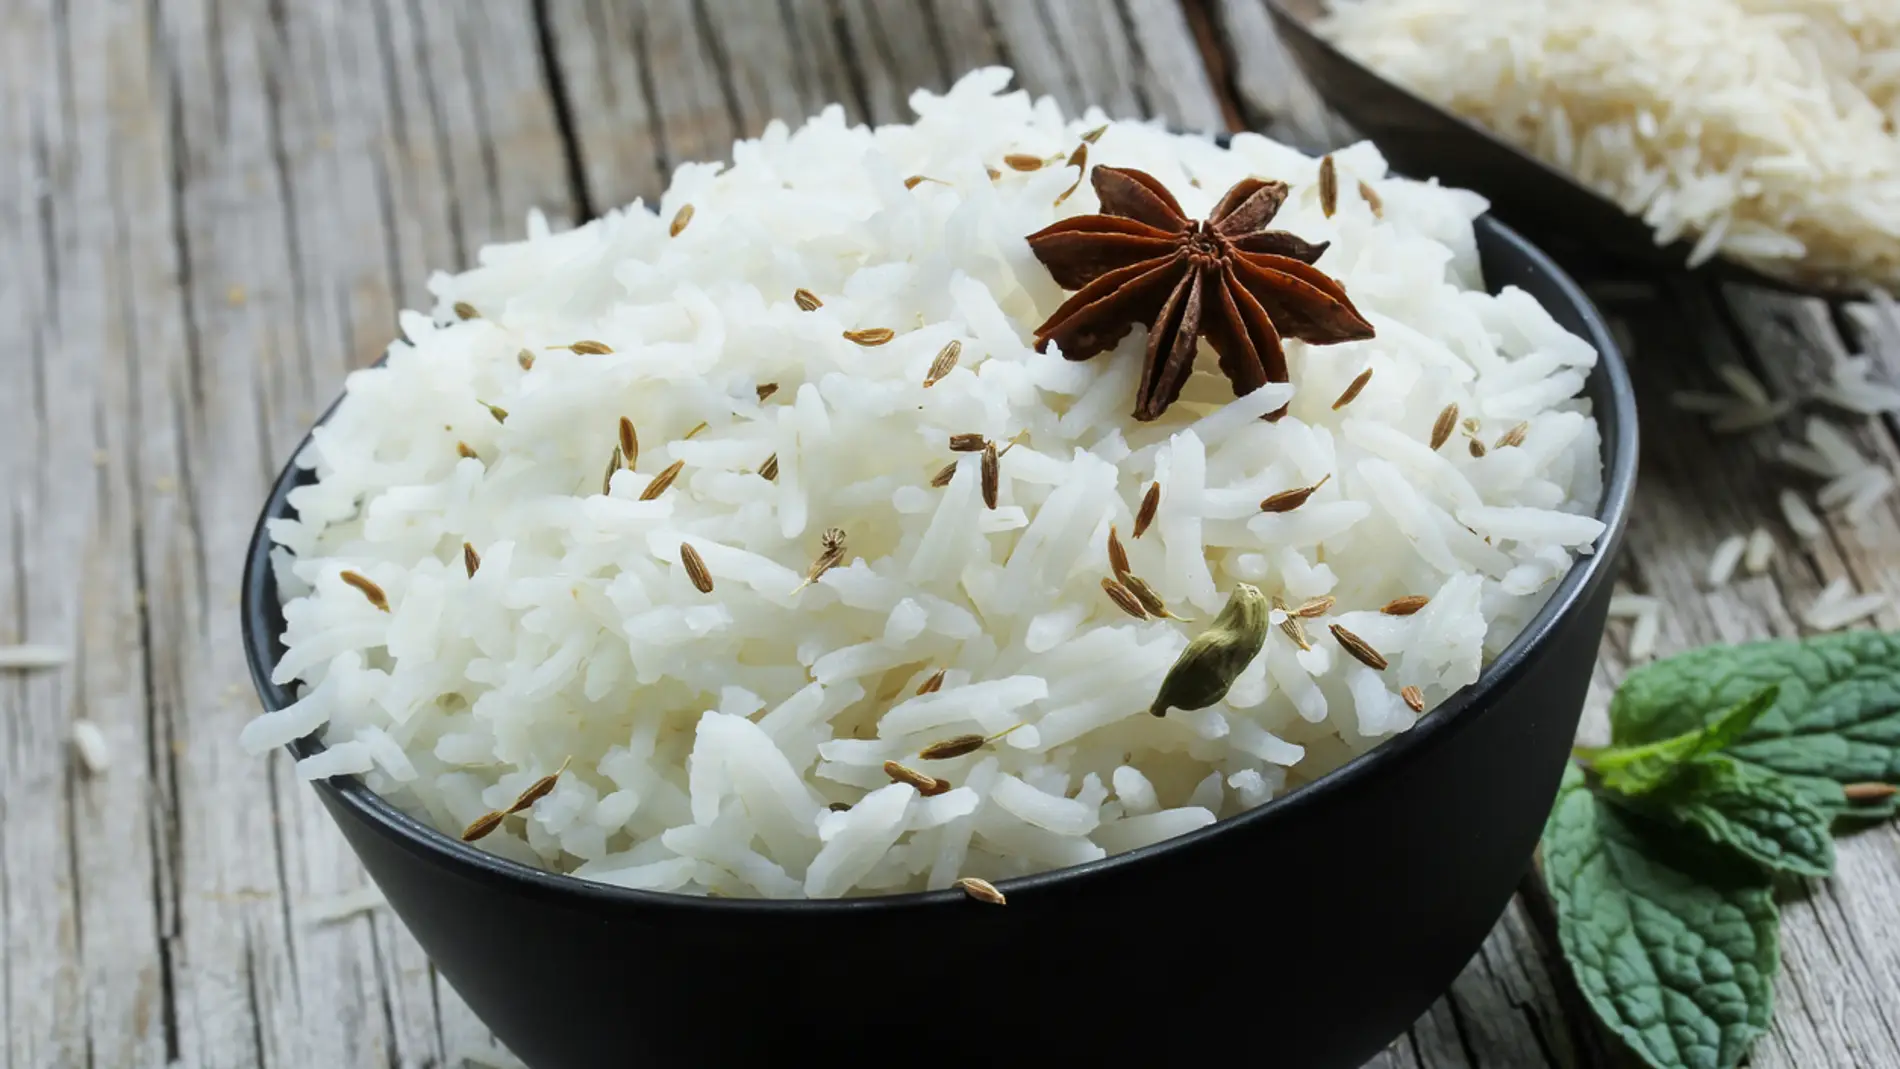 El arroz es uno de los alimentos que más peligro de intoxicación alimentaria conlleva